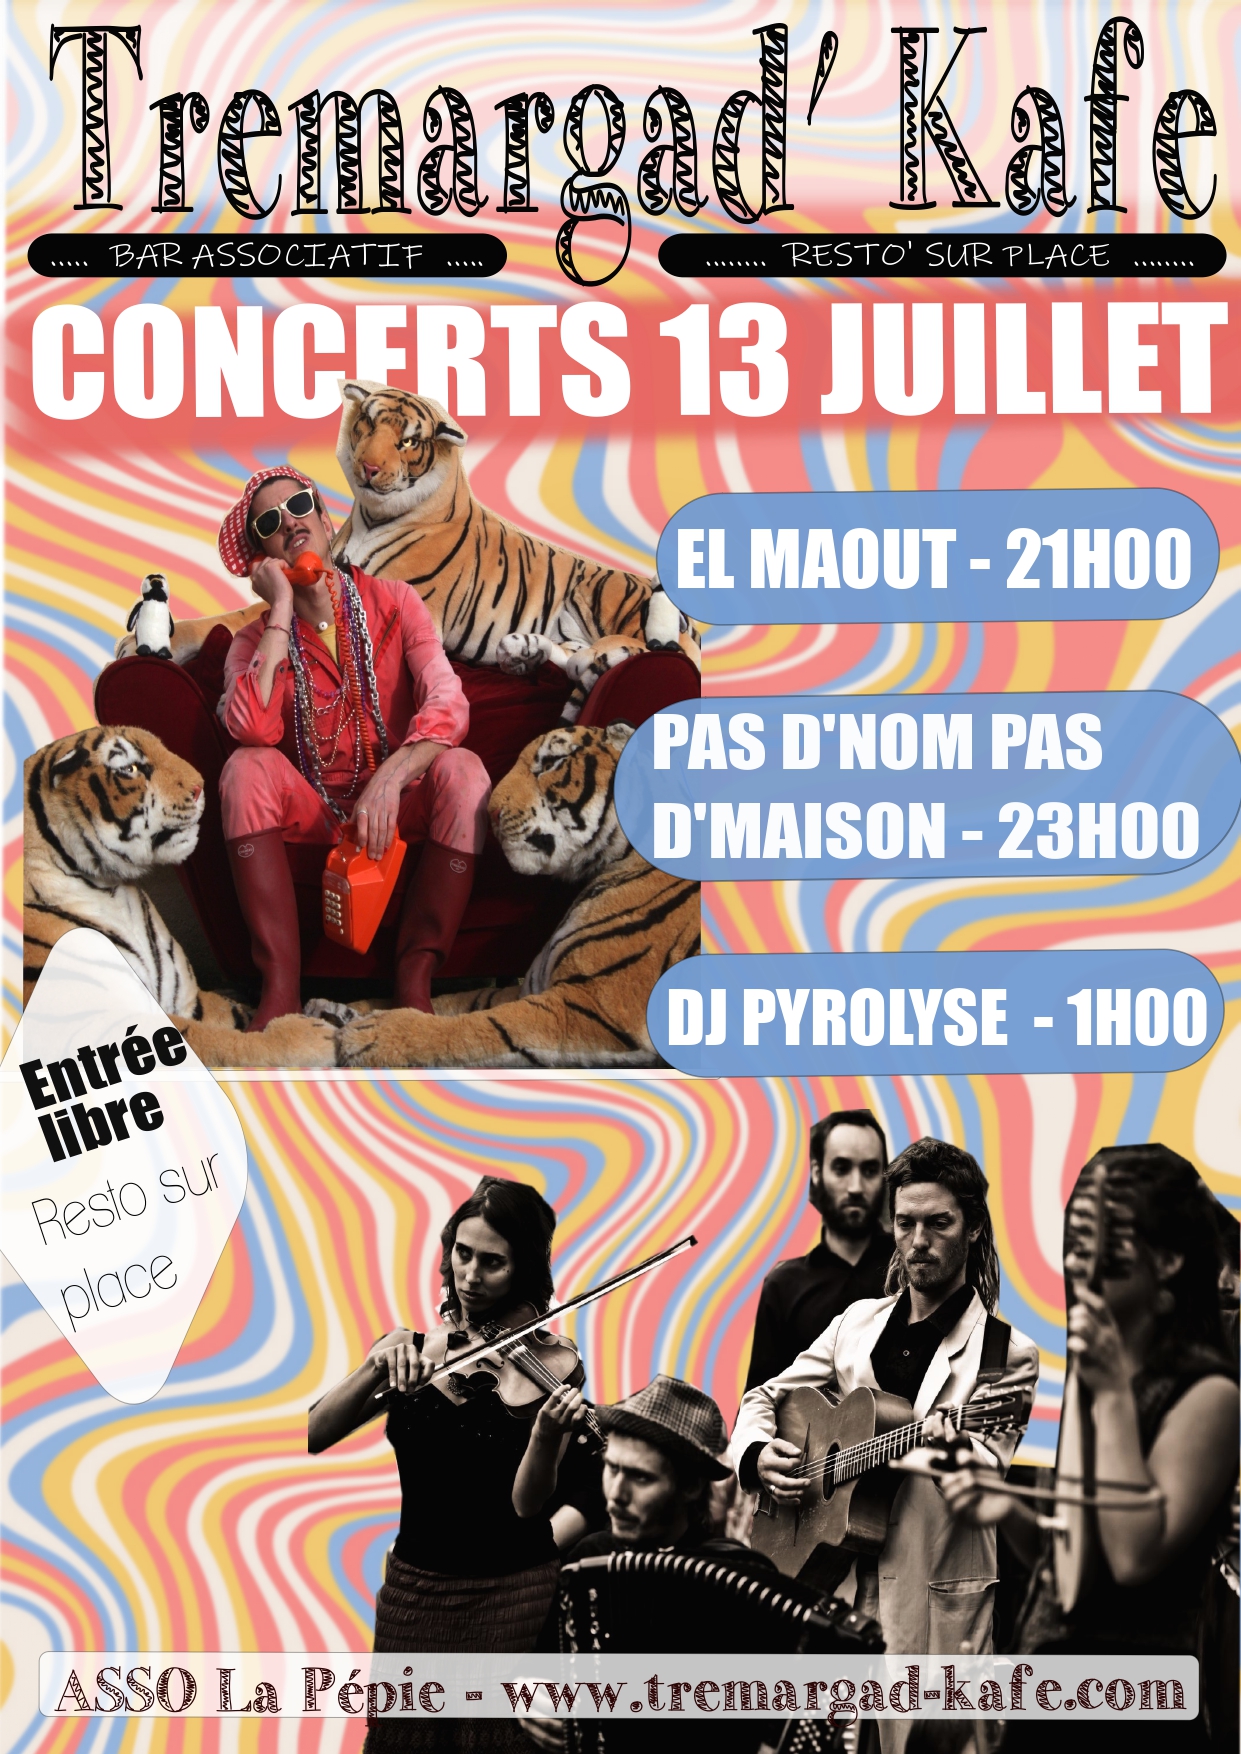 CONCERTS - El Maout // Pas d'nom pas d'maison // DJ Pyrolyse